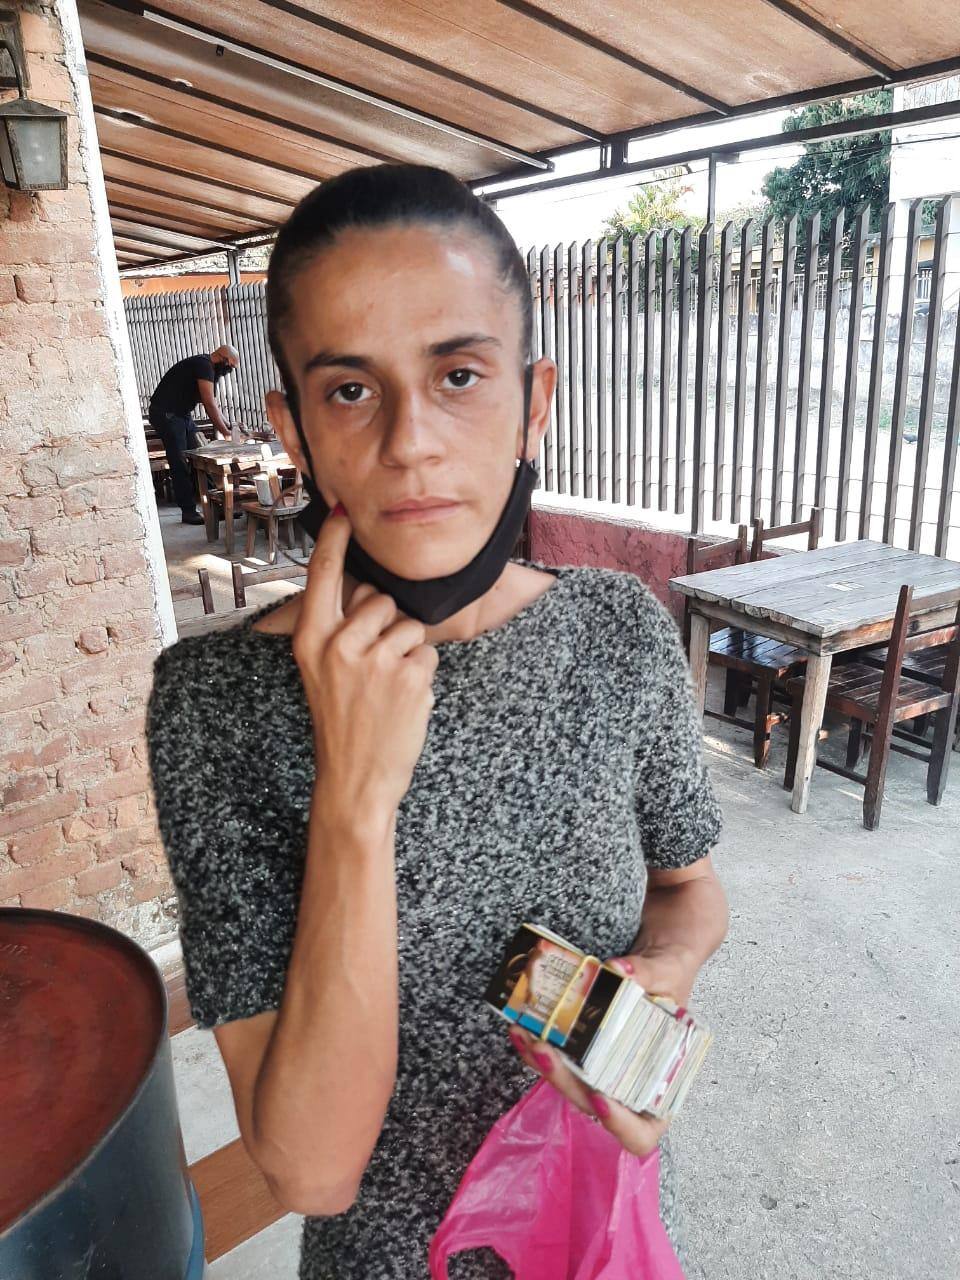 Carla Soares Domingues, de 36 anos, aplicava o golpe em cidades da região também. Ela sempre chegava com cartões e dizia que estava trabalhando para arrecadar dinheiro para a filha com câncer, o que foi confirmado pela polícia ser mentira.